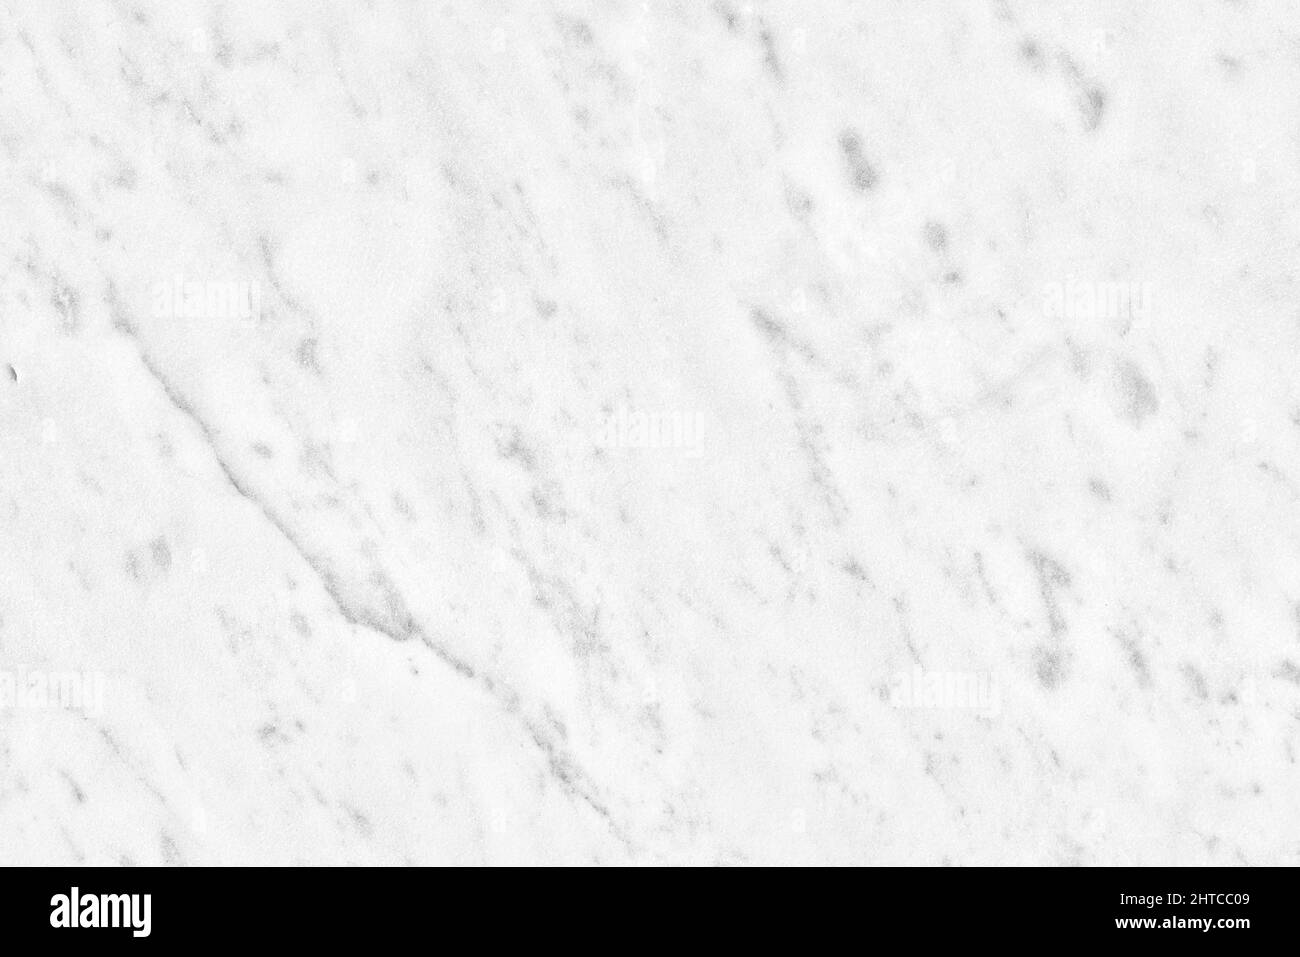 Weiß Carrara Marmor Textur, Hintergrund oder Muster für Bad oder Küche weiße Arbeitsplatte. Hohe Auflösung. Stockfoto